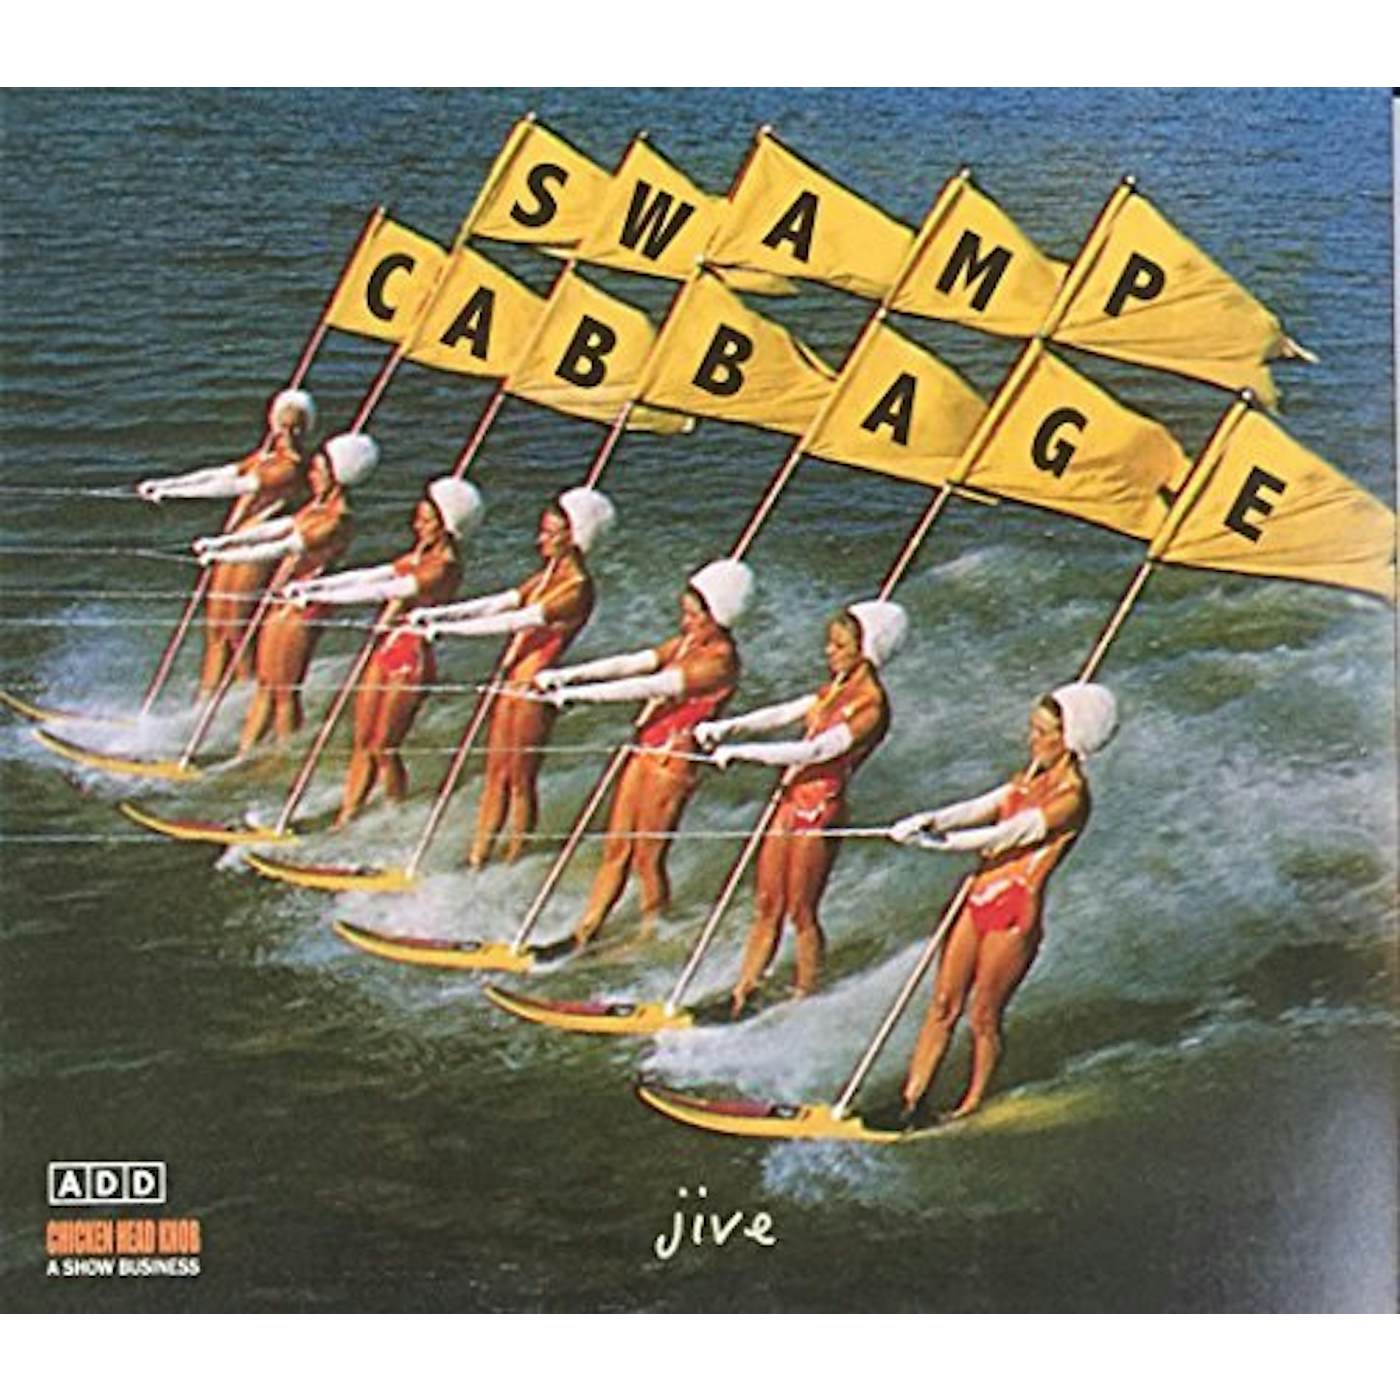 Swamp Cabbage JIVE CD